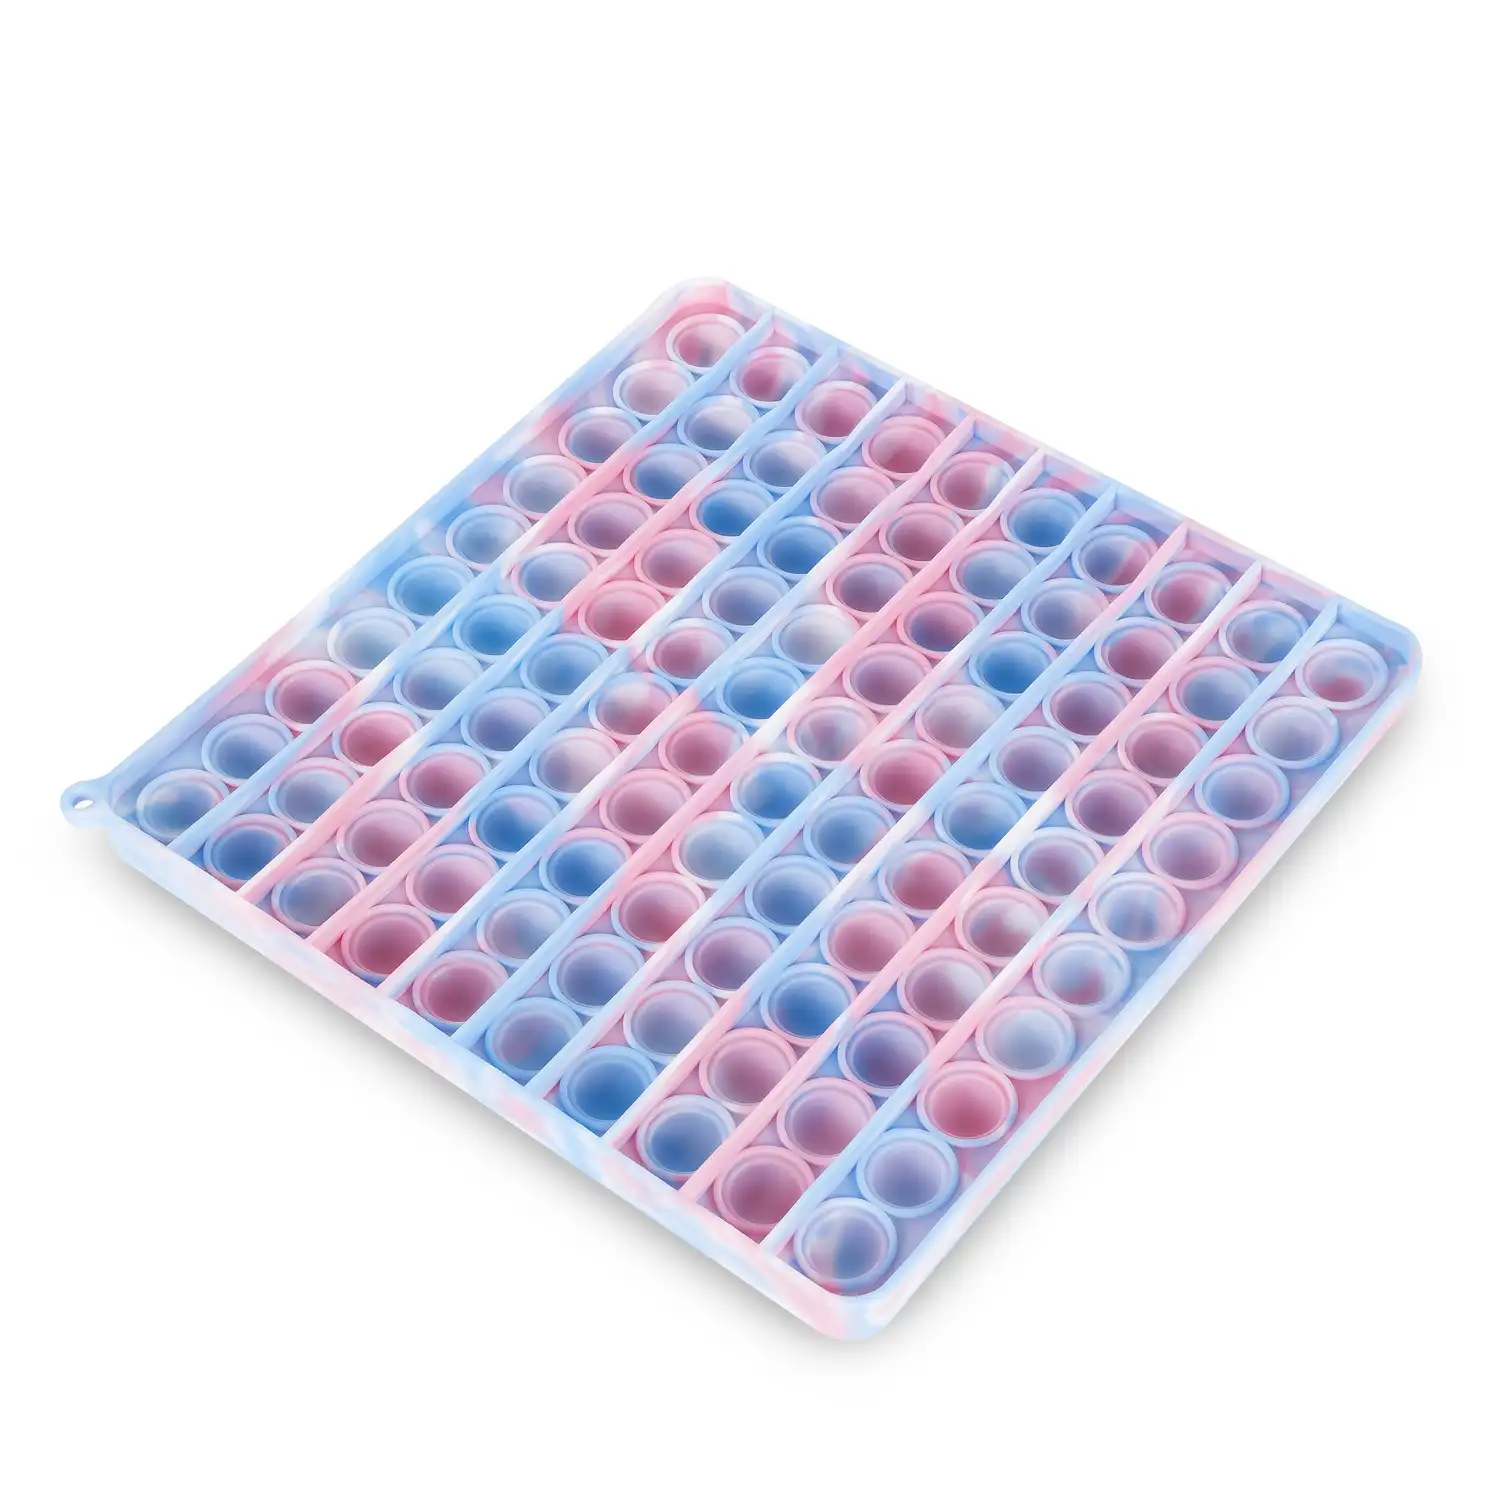 Bubble Pop It, 20cm. cuadrado multicolor. Juguete sensitivo desestresante, burbujas de silicona para apretar y pulsar.